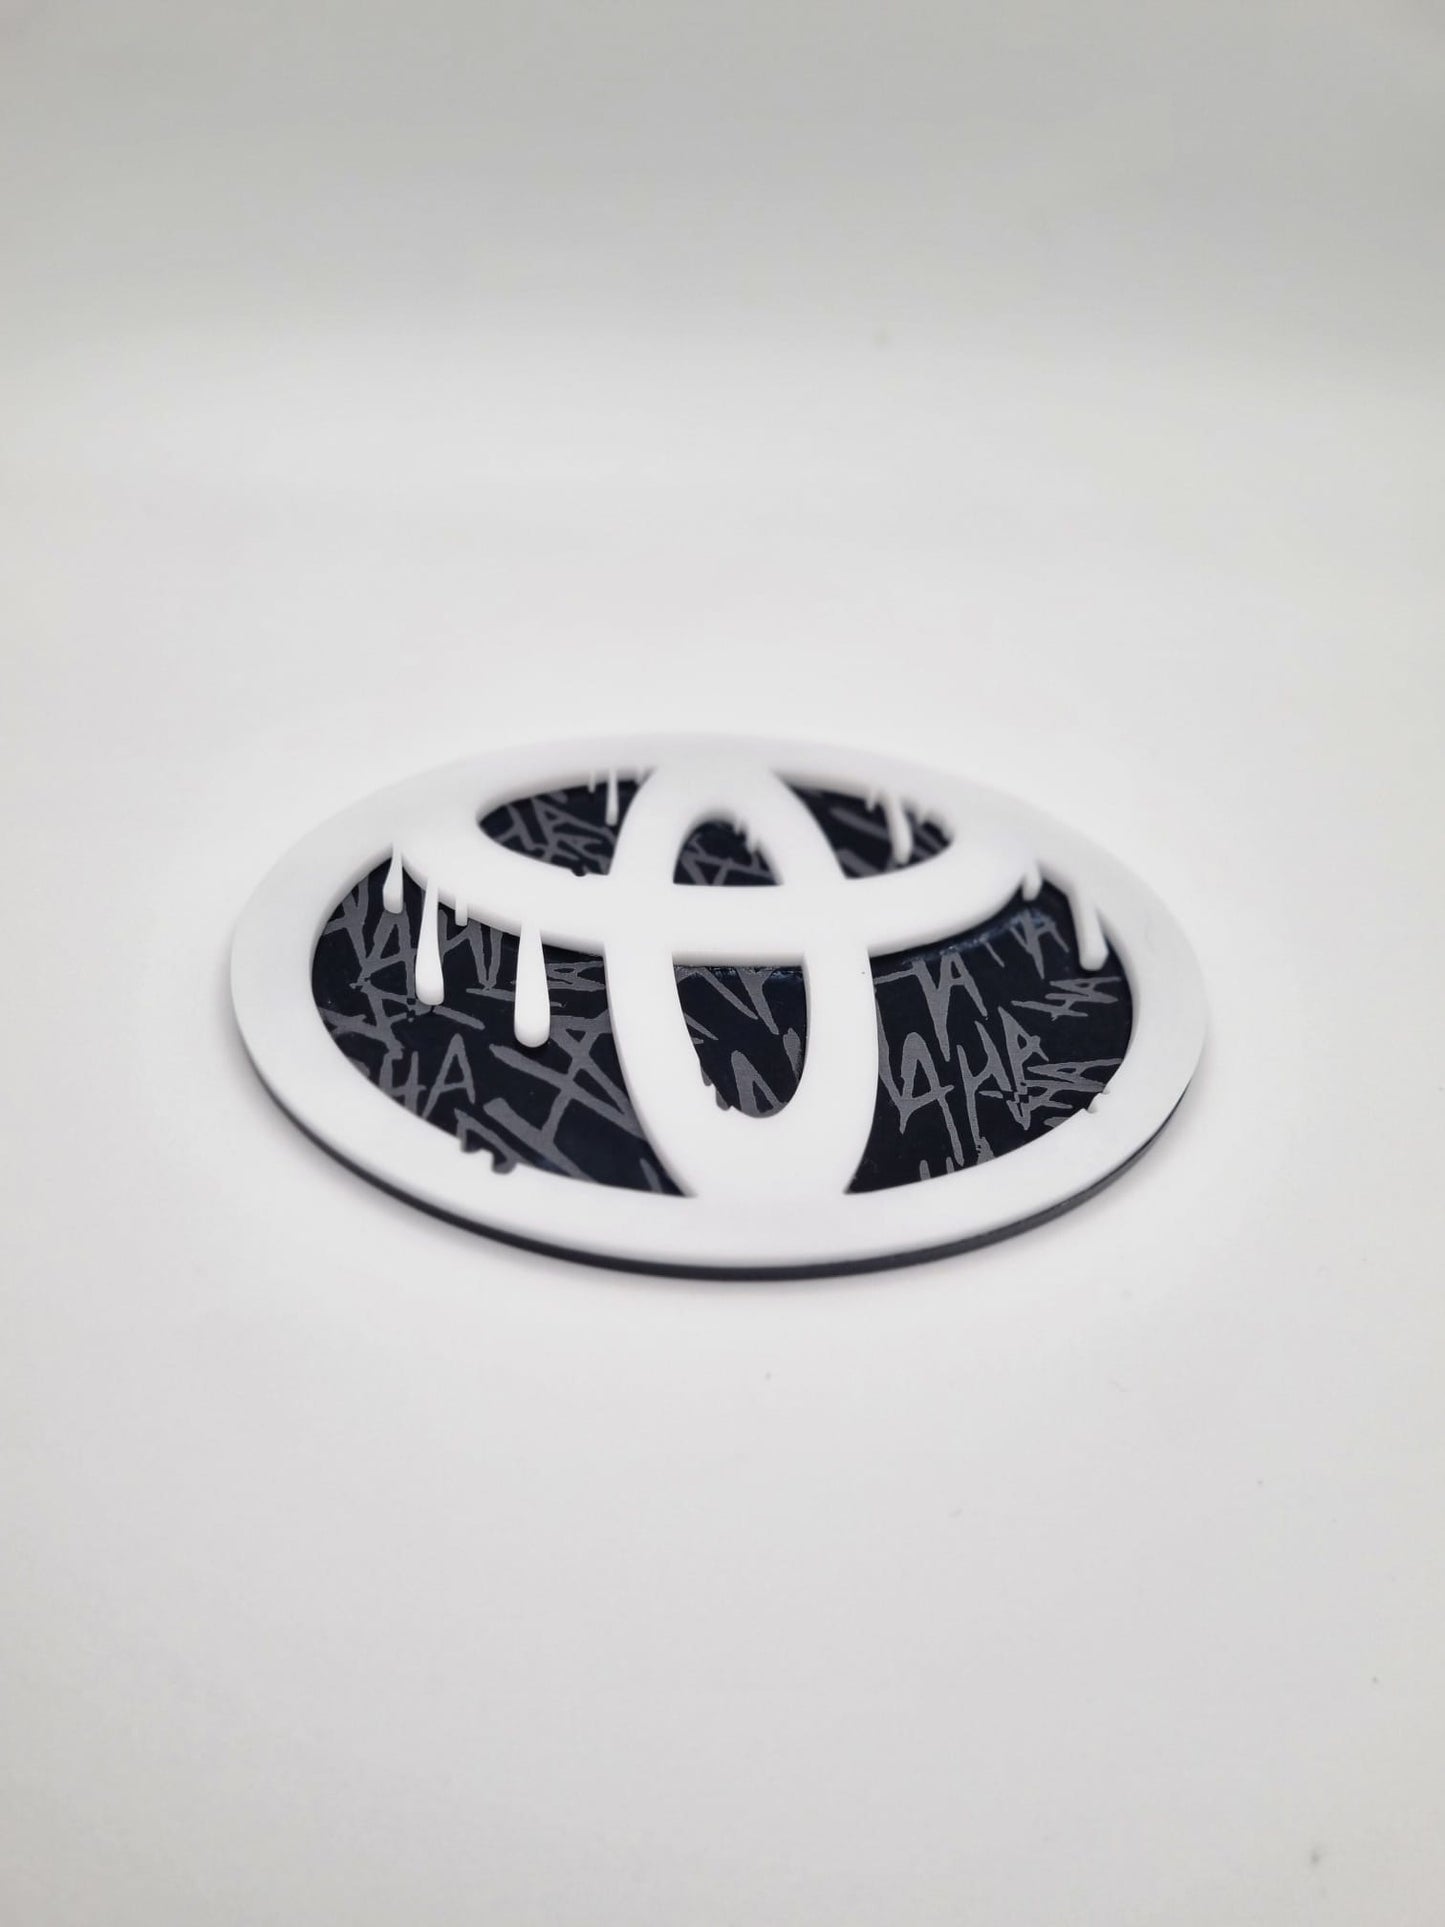 Toyota Tacoma badge 05-2015